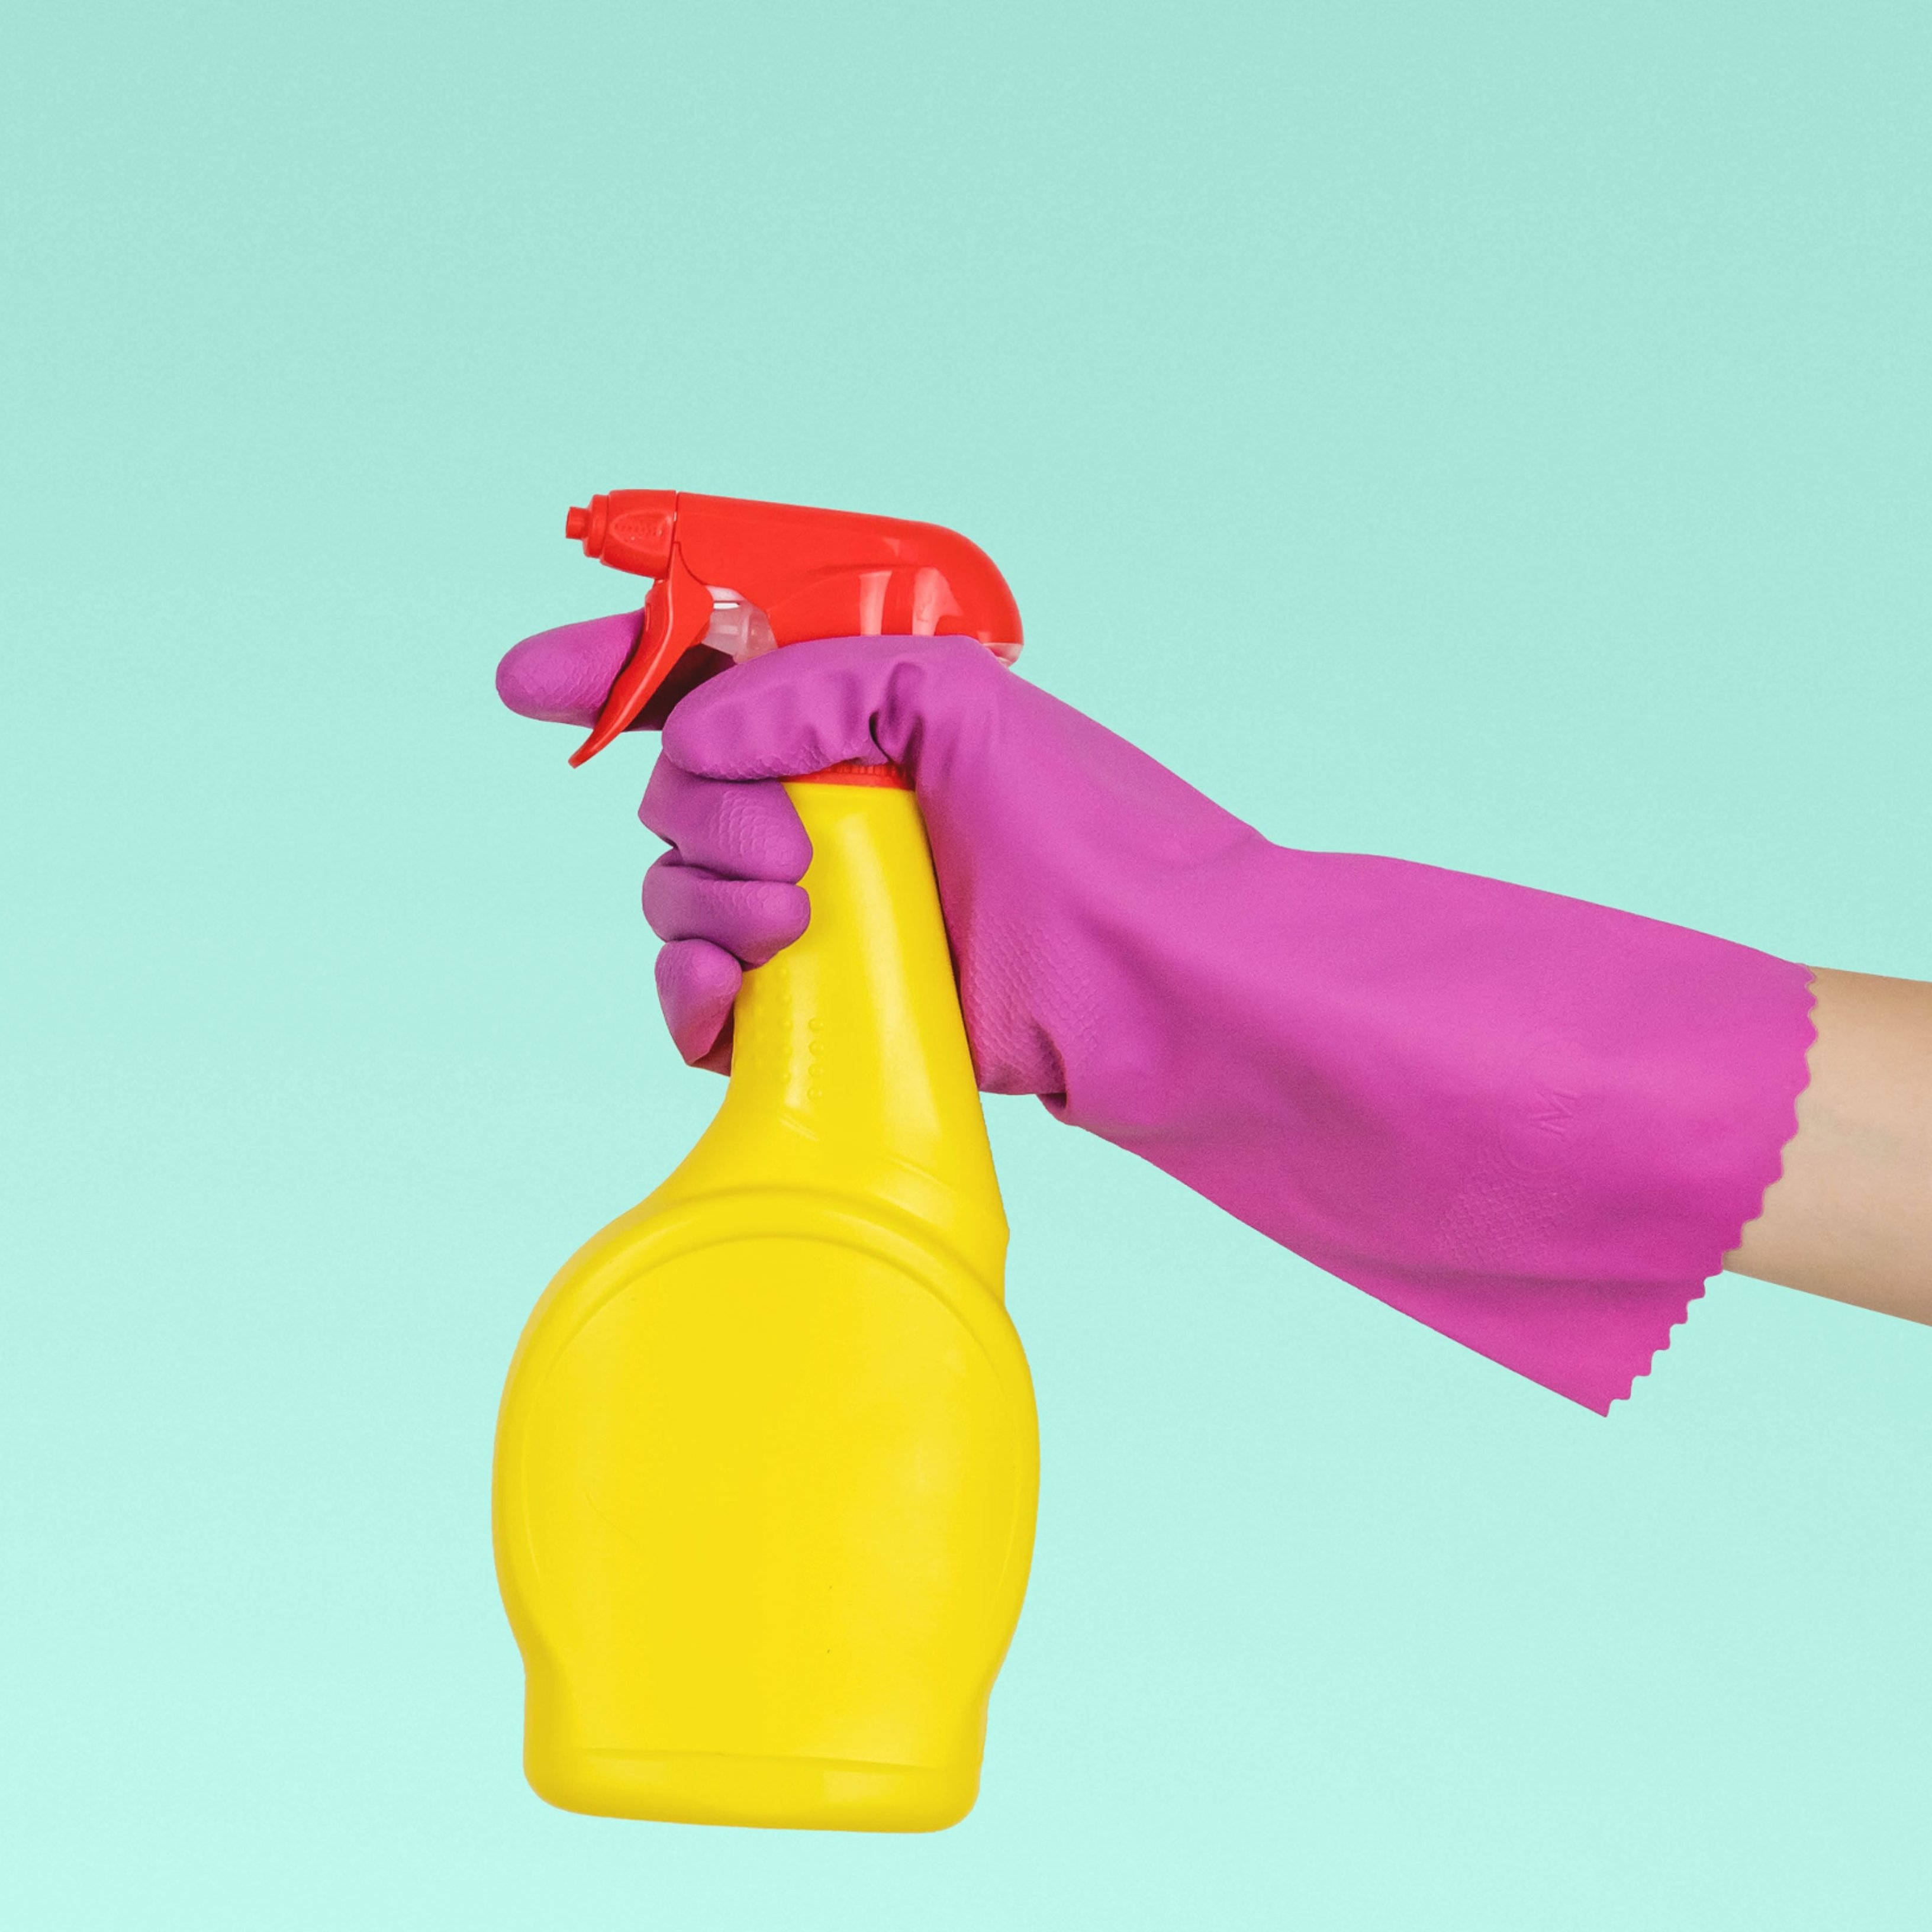 Aquesta combinació de productes per a la neteja pot provocar greus problemes de salut